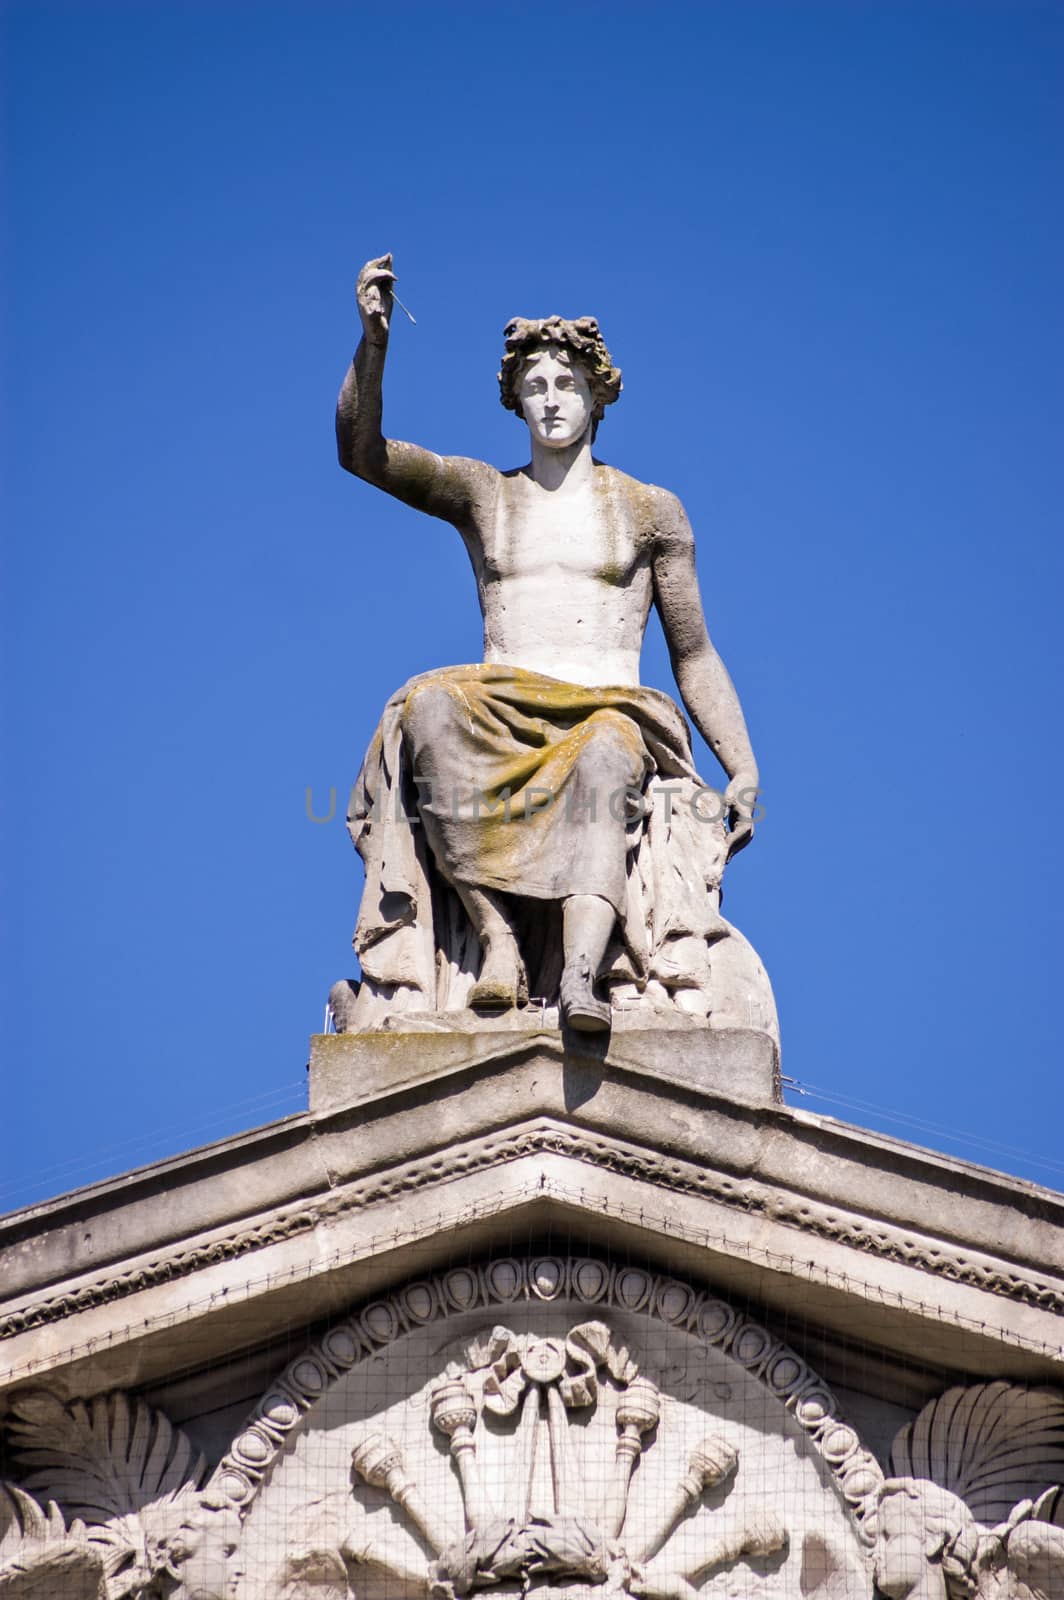 Apollo statue, Ashmolean Museum, Oxford by BasPhoto